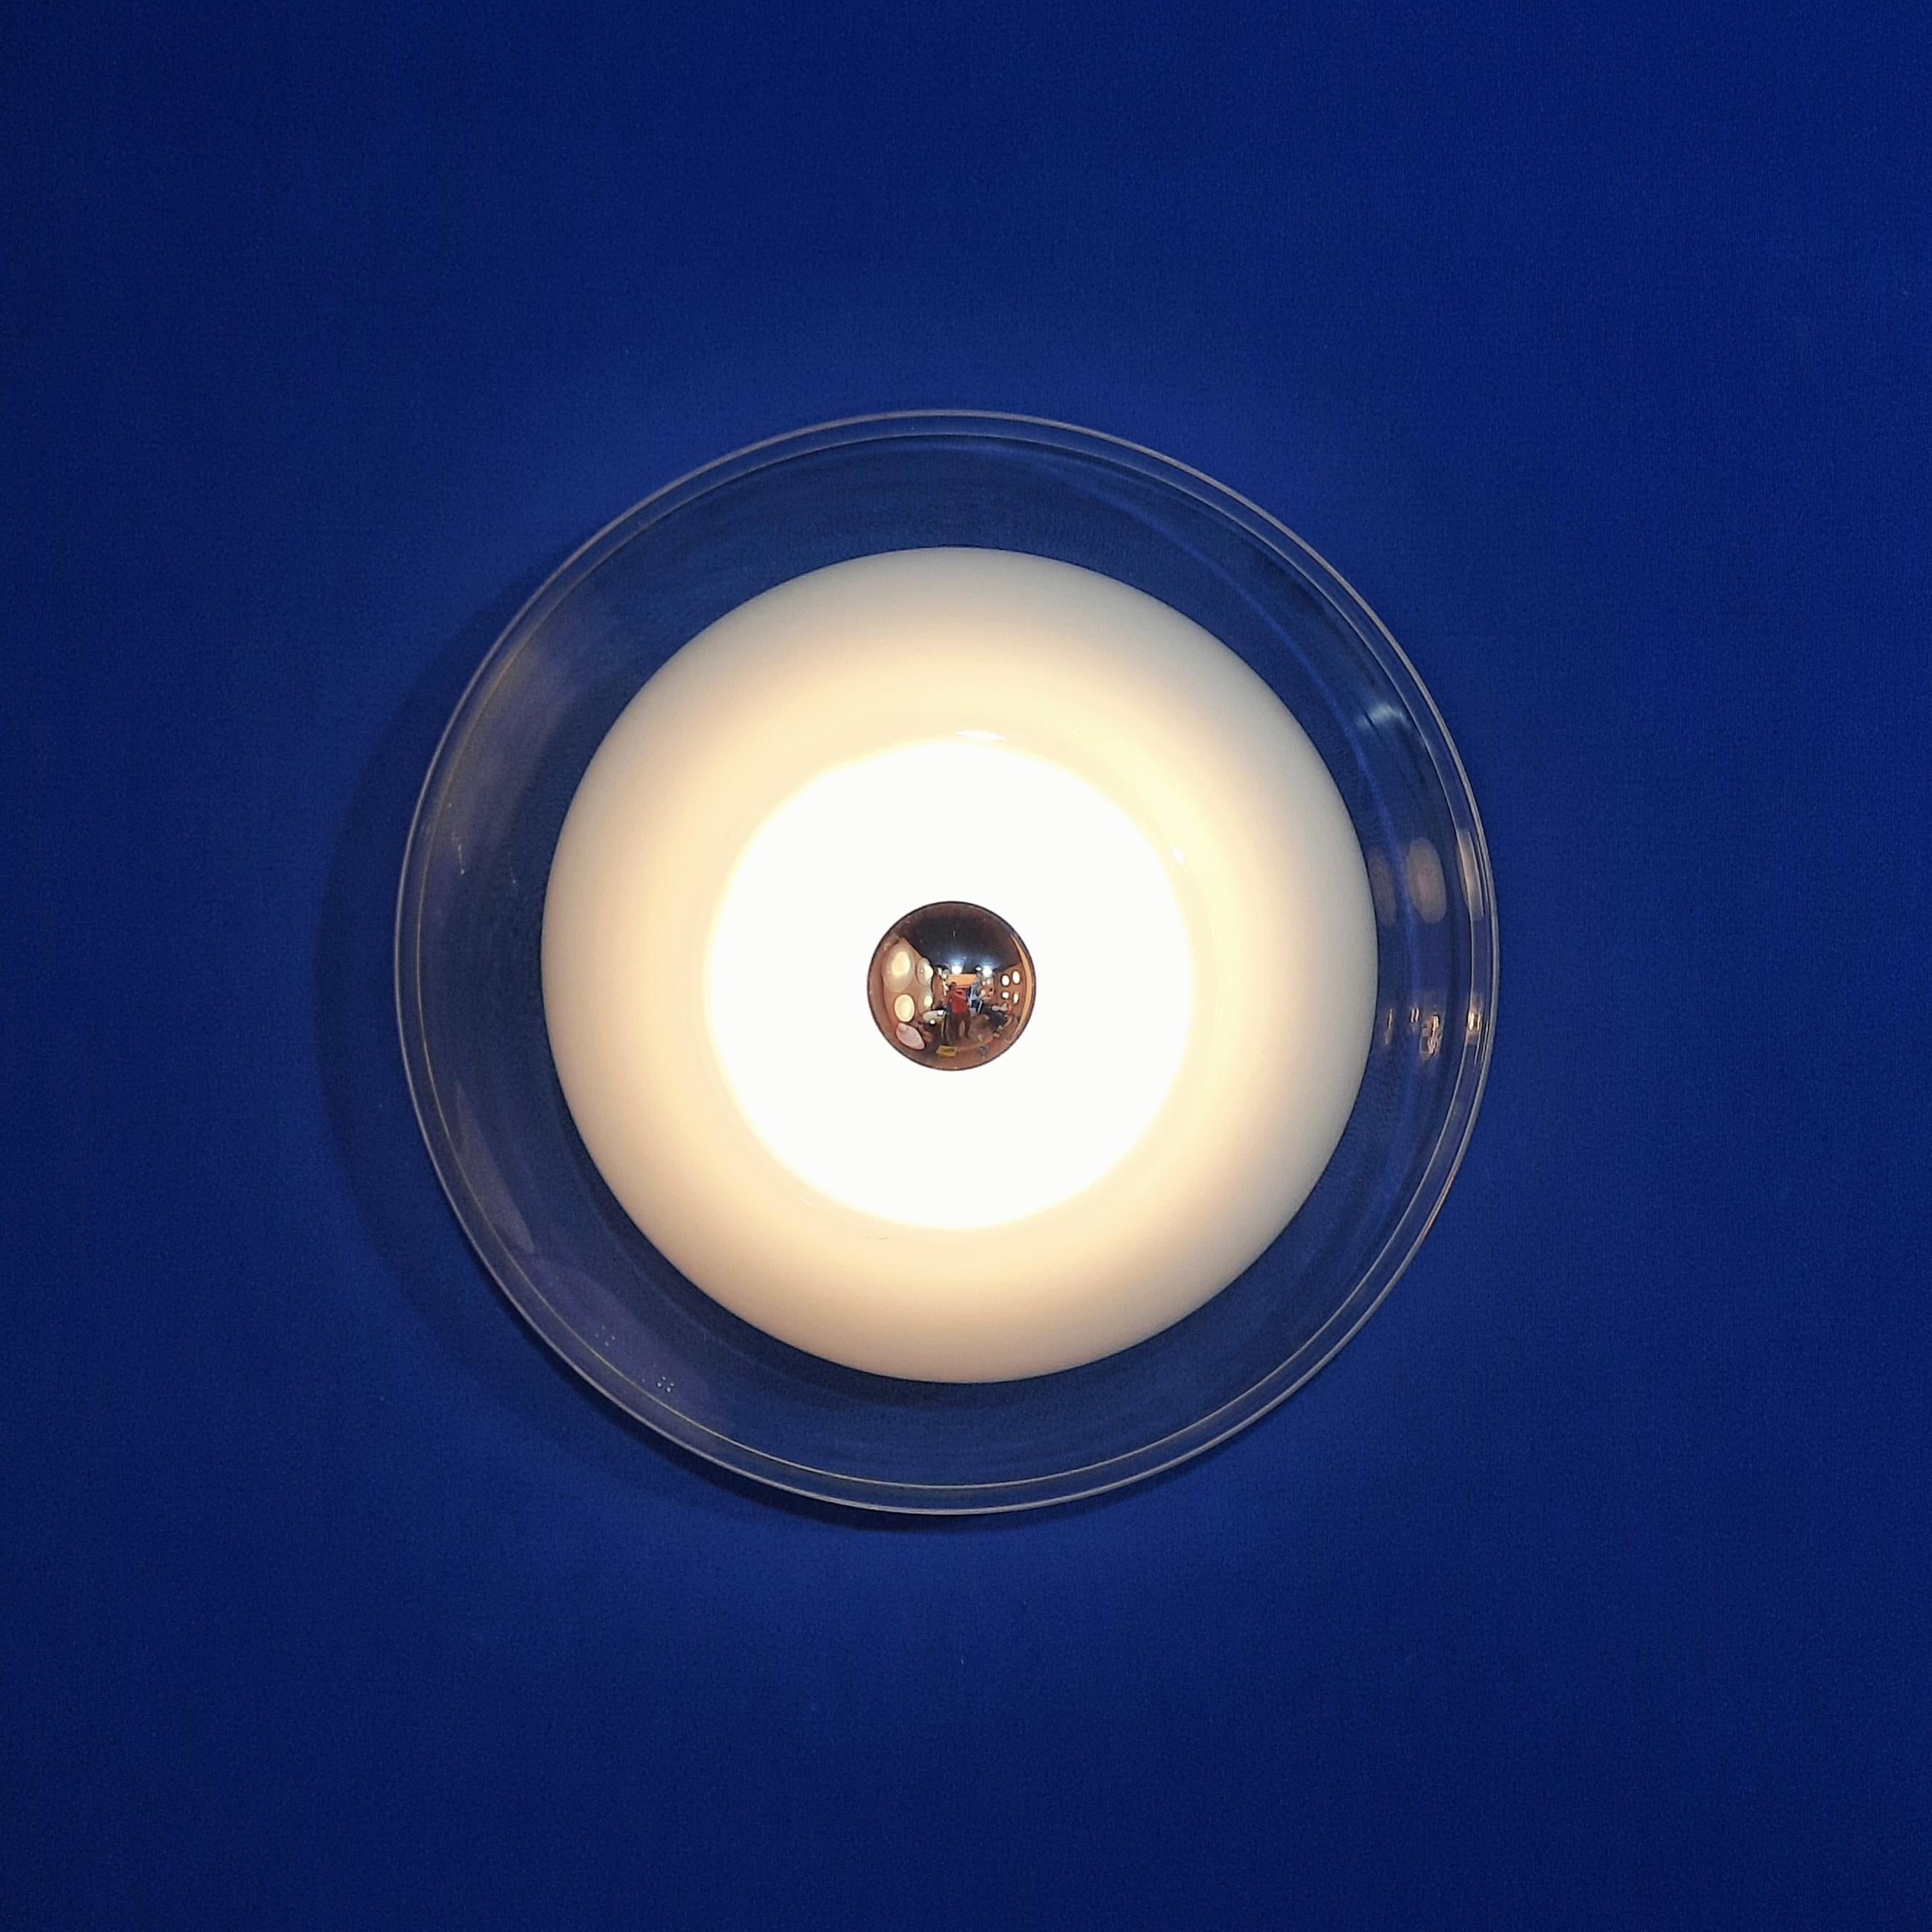 Montage simple en verre de Murano soufflé à la main pour fixation au mur ou au plafond.
Verre de Murano opalin et translucide blanc et base en métal chromé.
Edité à la fin des années 1970 par la célèbre marque Esperia.

Le câblage a été